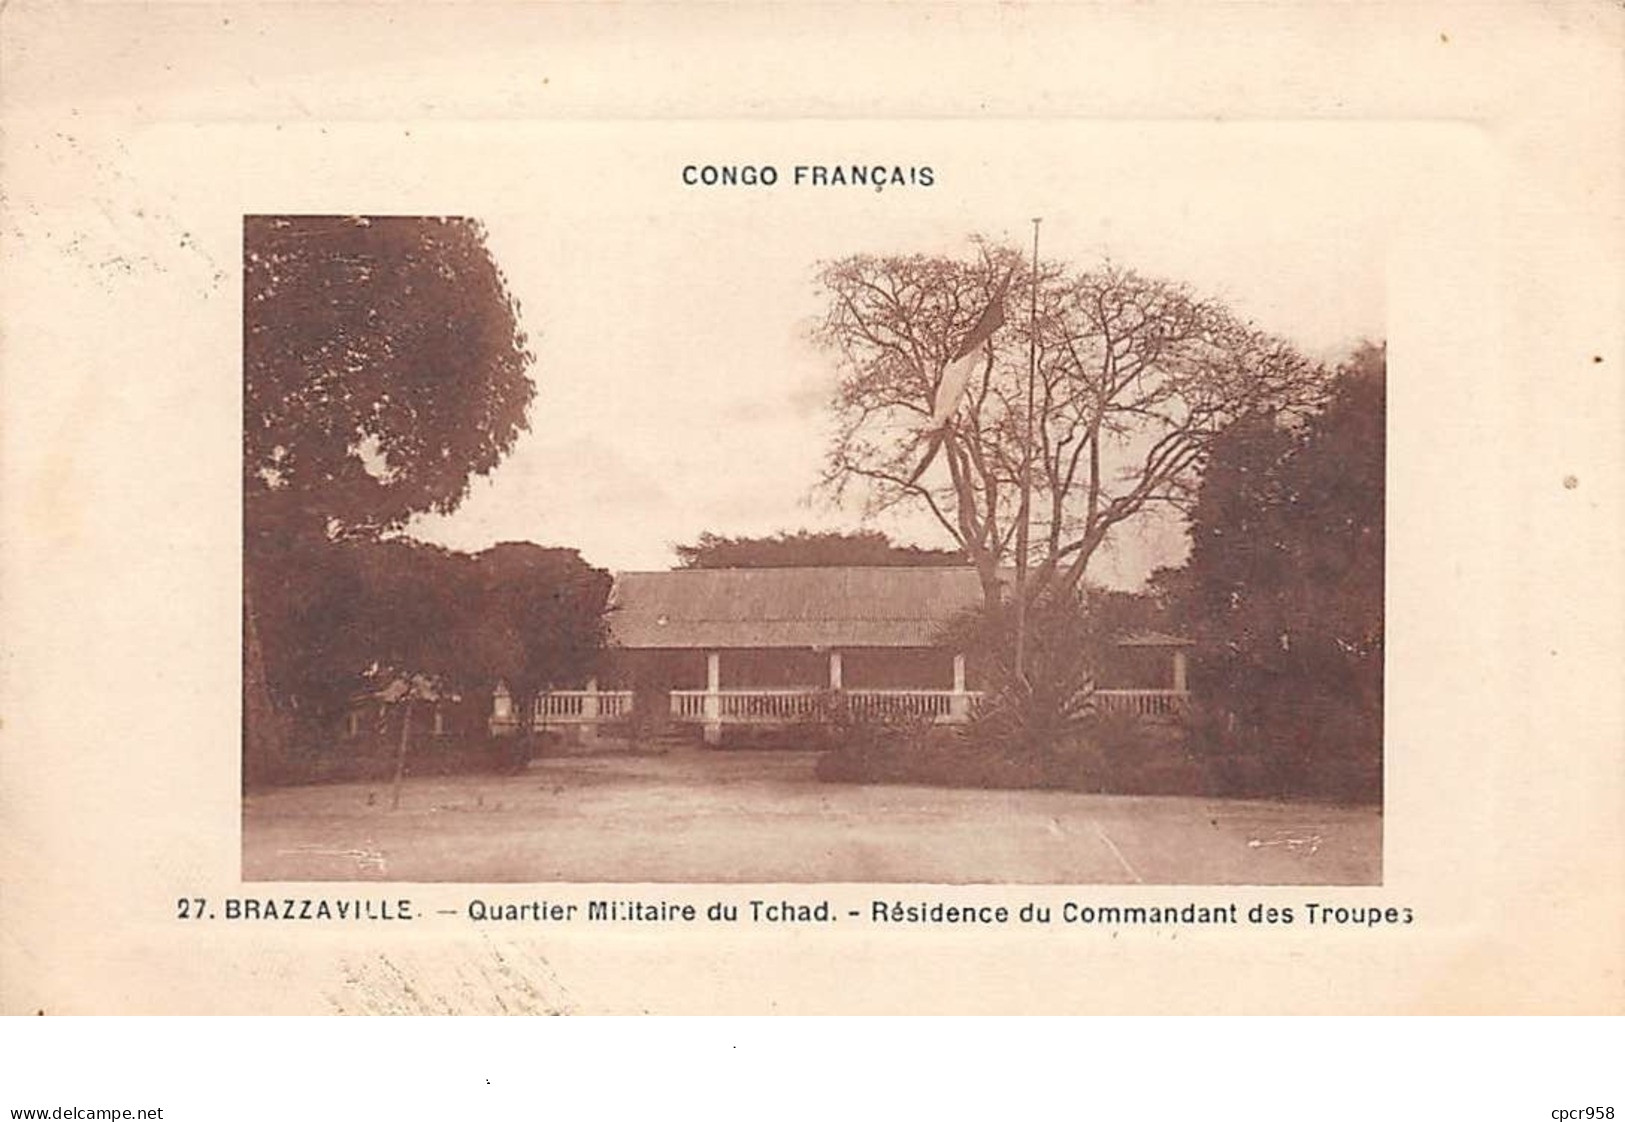 Congo - N°67729 - BRAZZAVILLE -Quartier Militaire Du Tchad - Résidence Du Commandant Des Troupes -Carte Vendue En L'état - Brazzaville